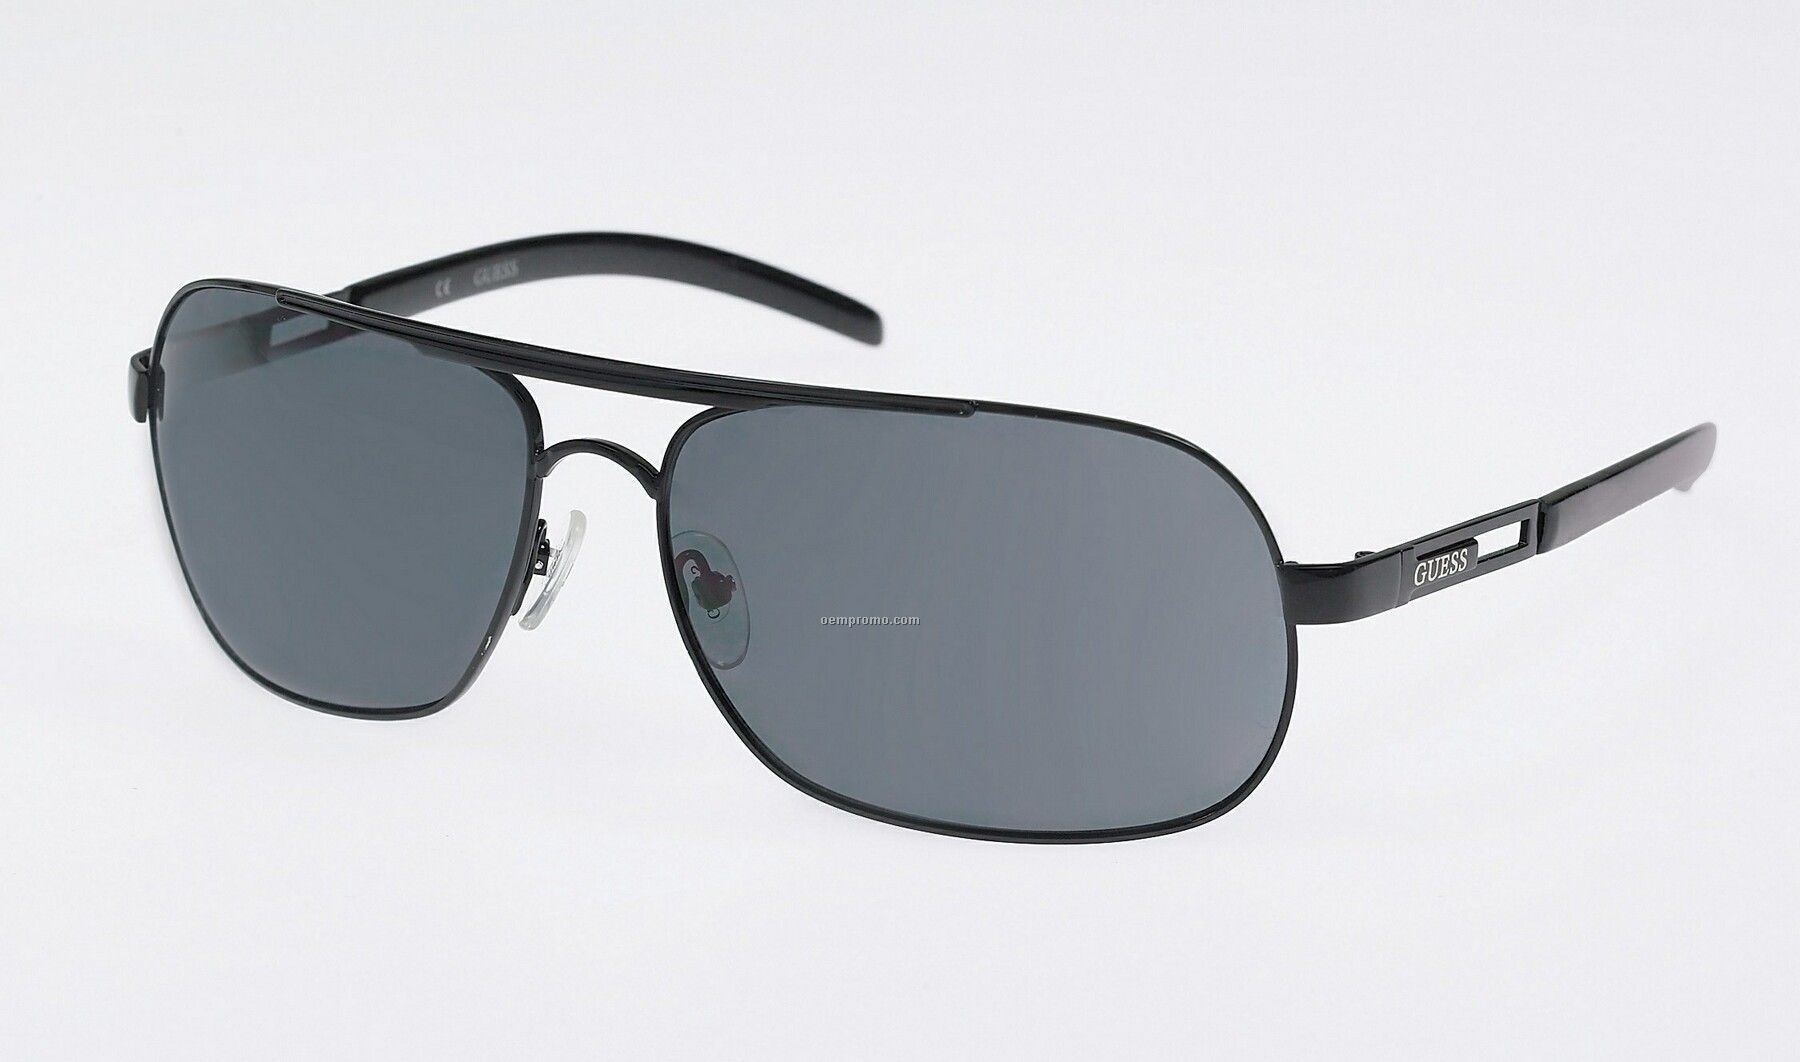 Black/Grey Lens Guess Mens Sunglasses W/ Metal Aviator